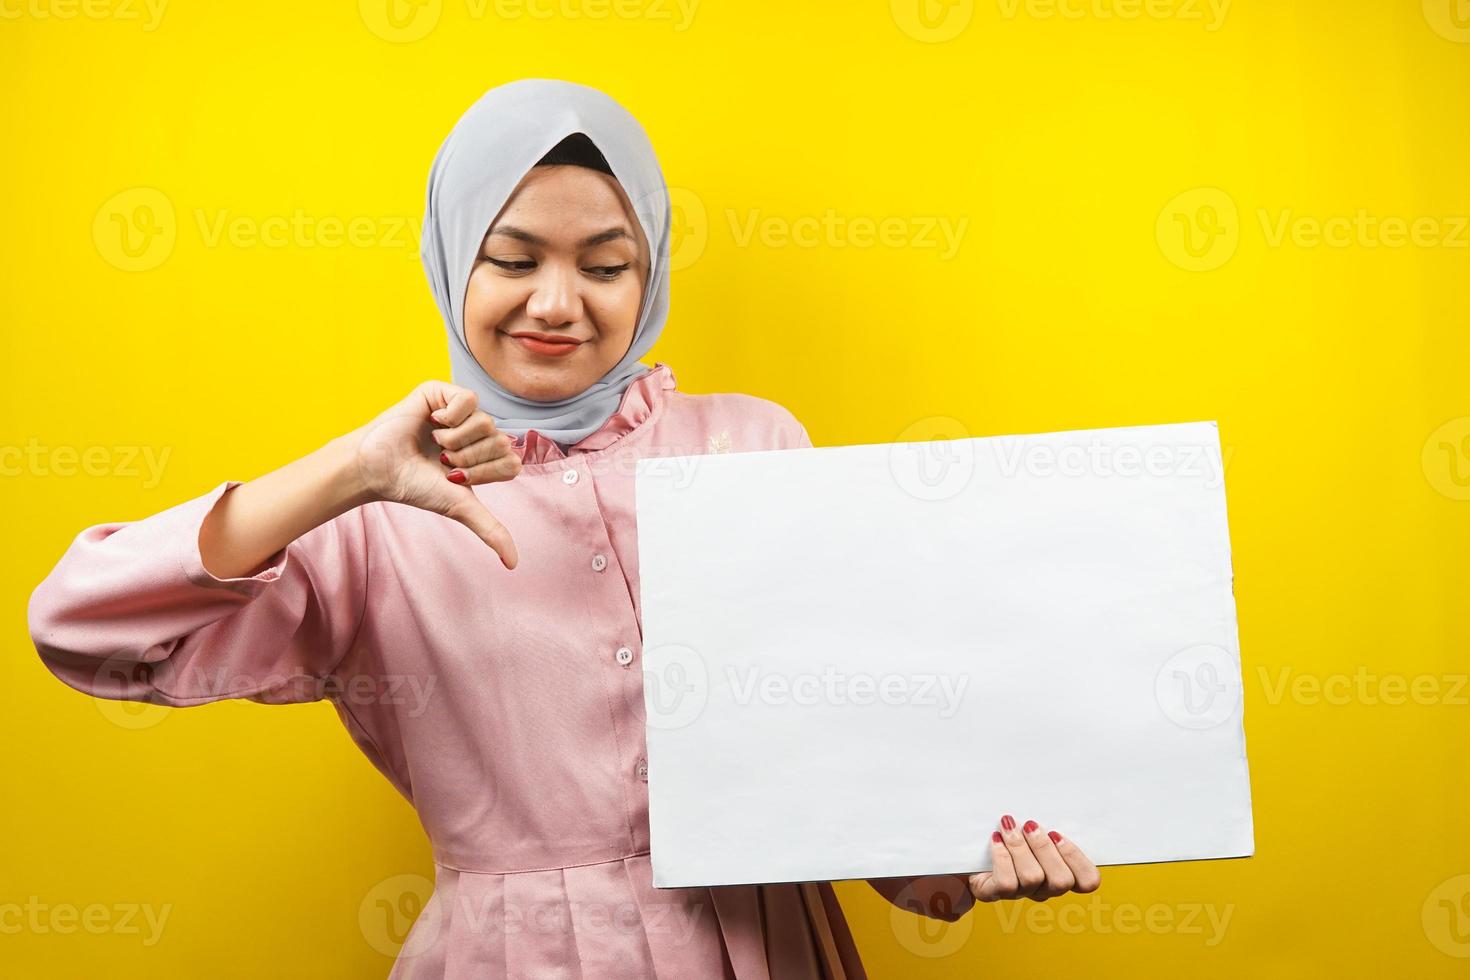 ganska ung muslimsk kvinna ogillar, hand som håller en tom tom banderoll, plakat, vit tavla, tom skylttavla, vit reklamtavla, presentera något i kopieringsutrymmet, marknadsföring foto